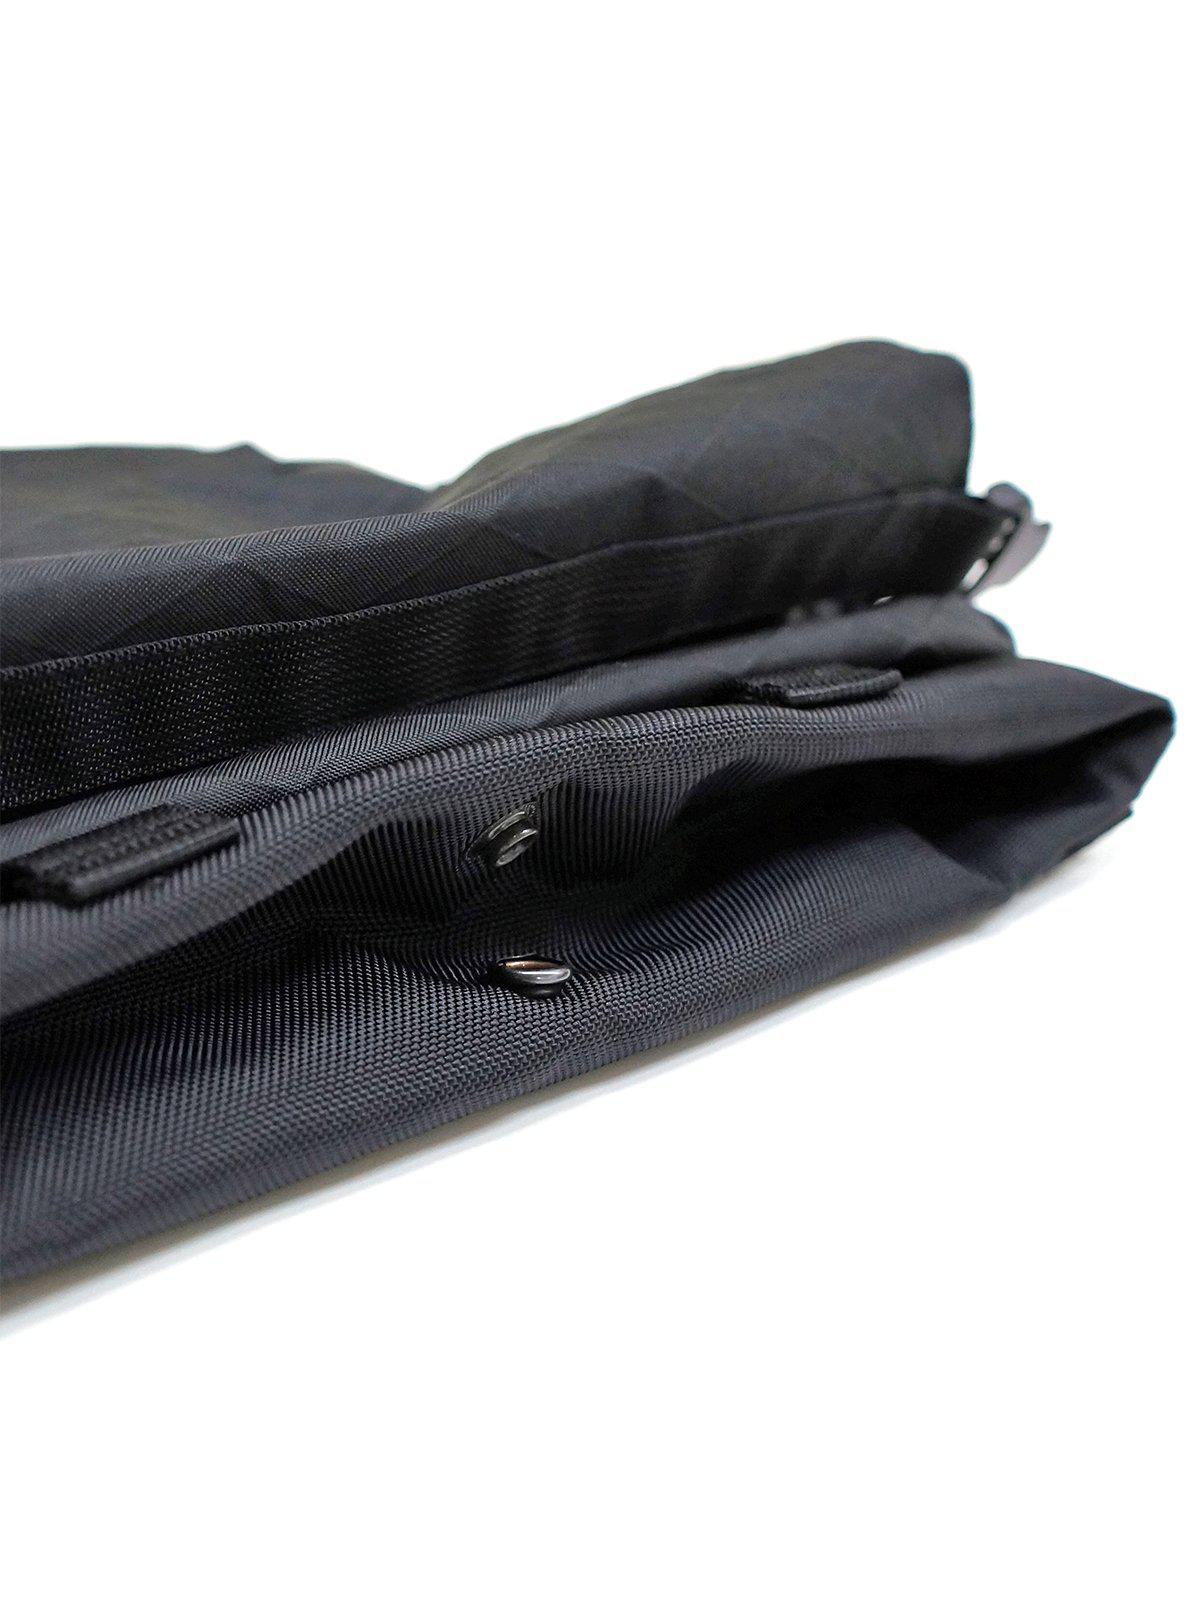 Code Of Bell ANNEX Liner Sacoche Sling Bag Multicam Black